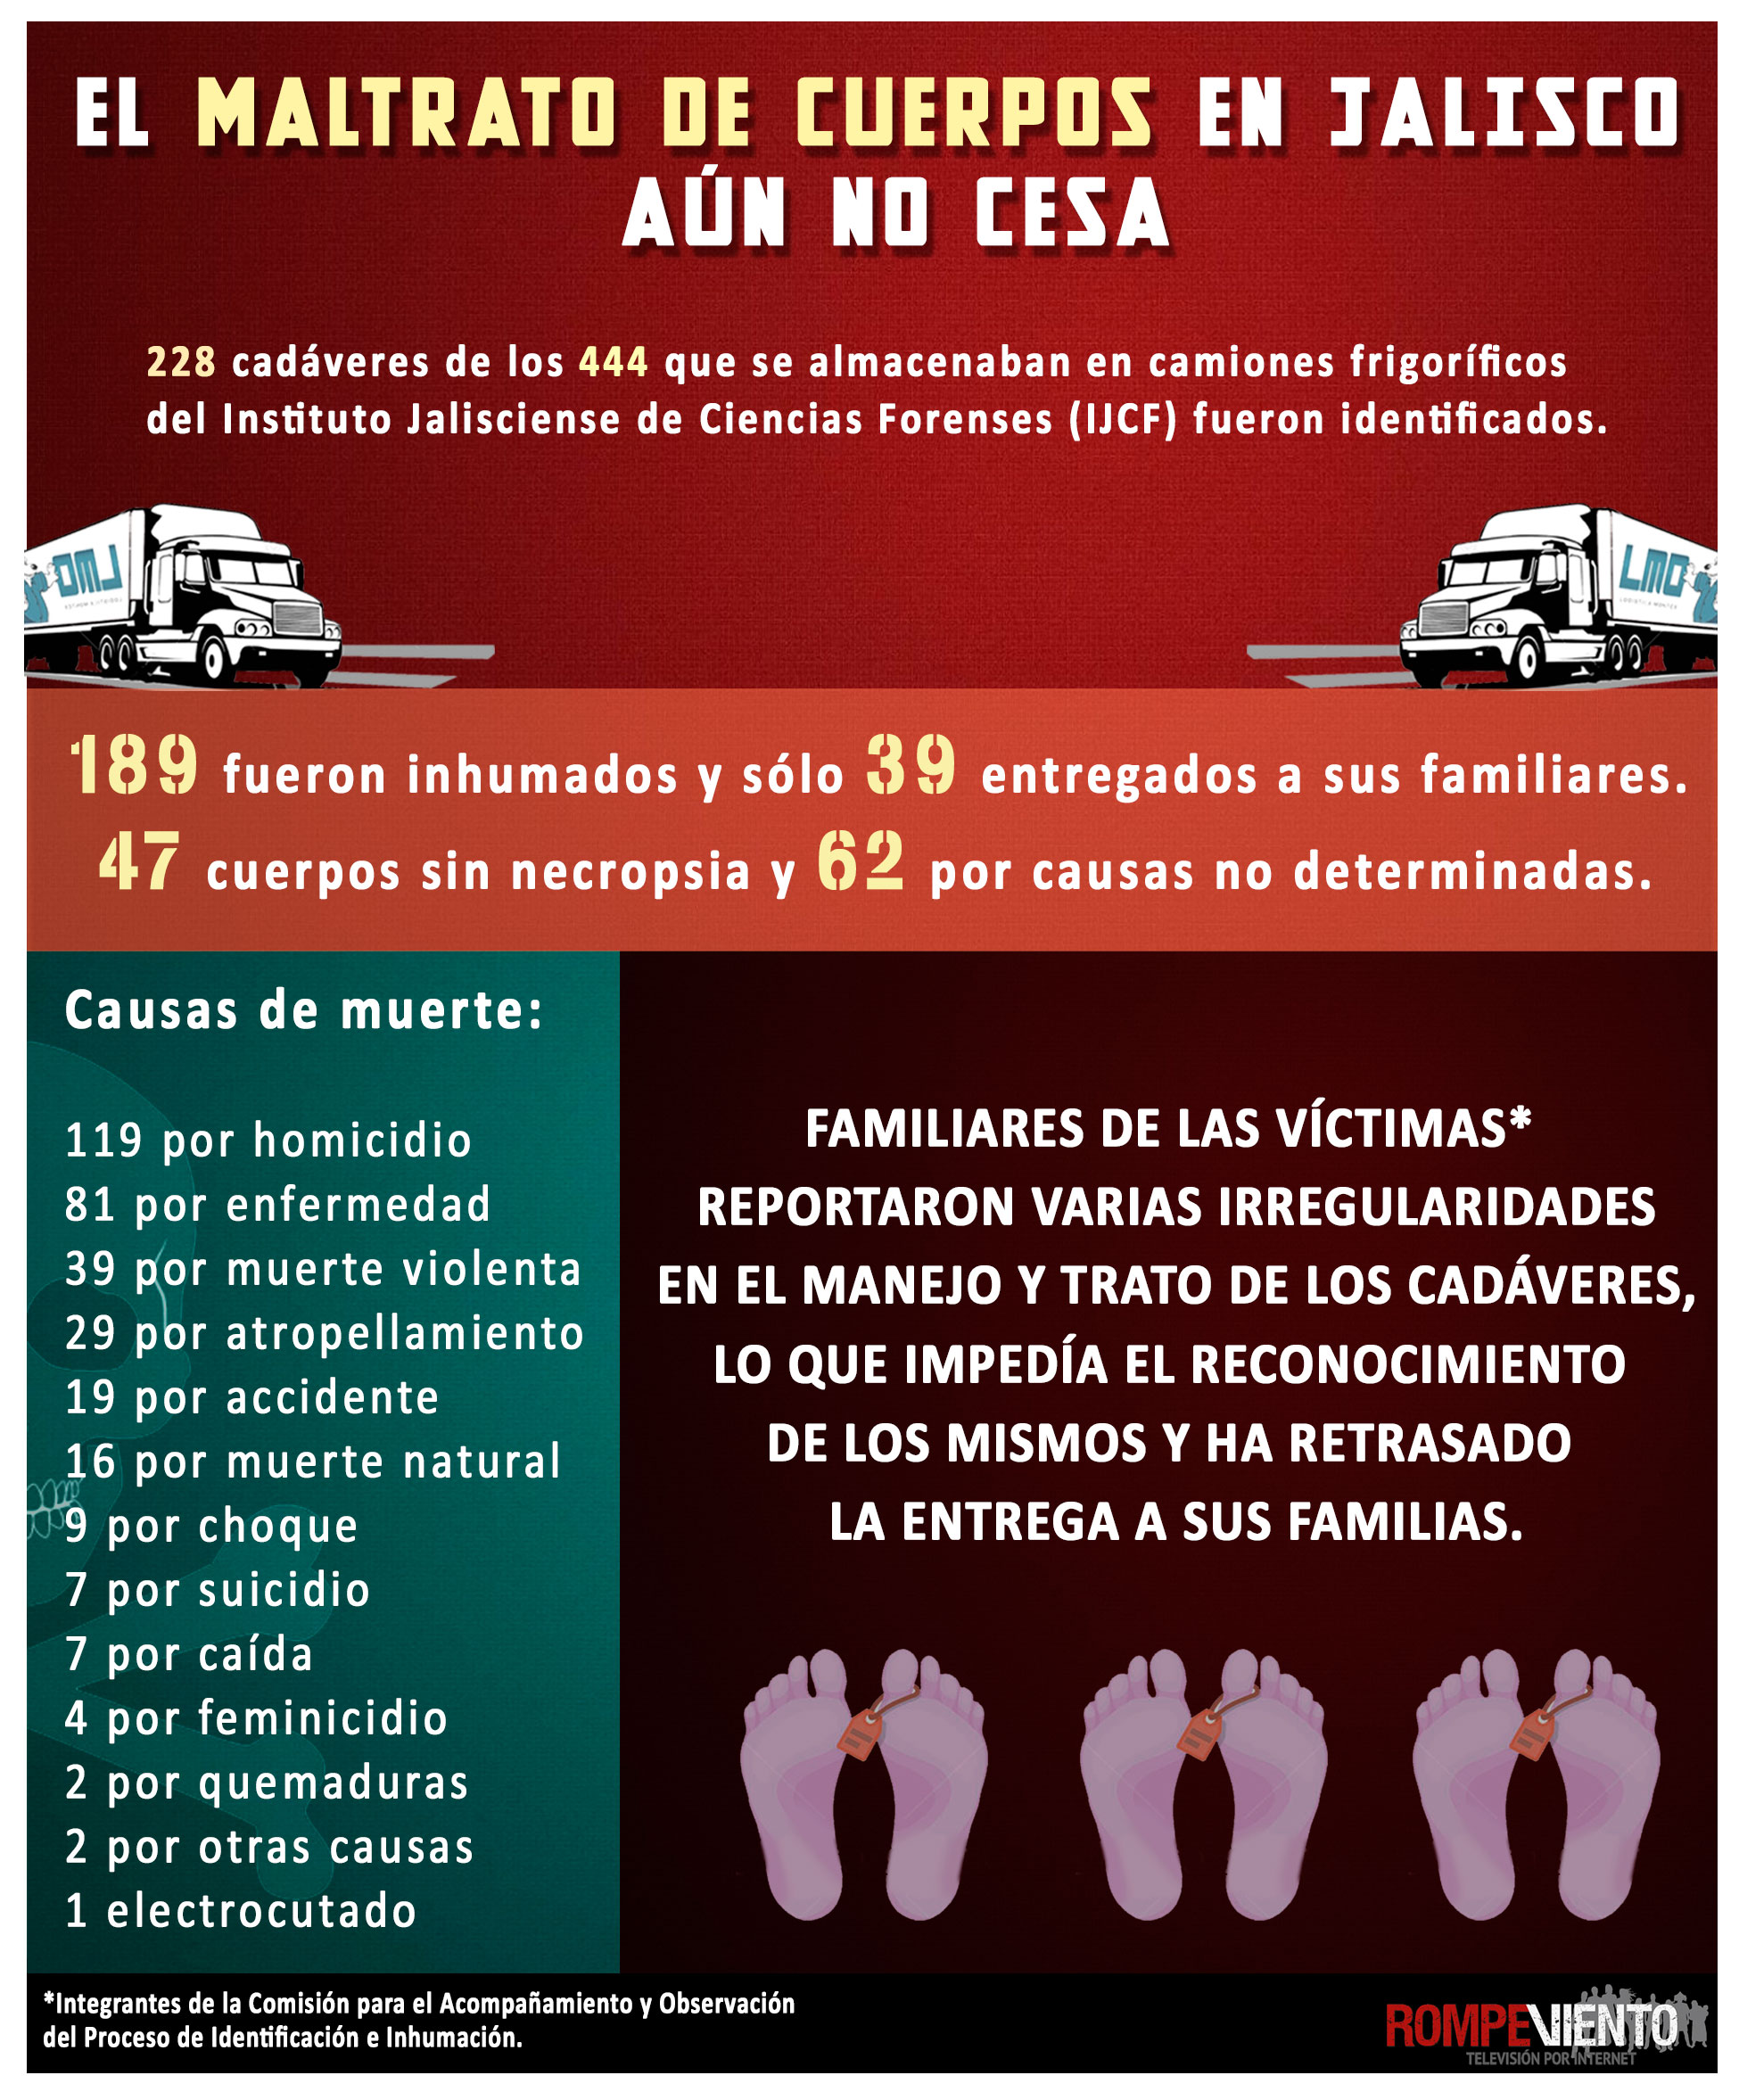 El maltrato de cuerpos en Jalisco aún no cesa